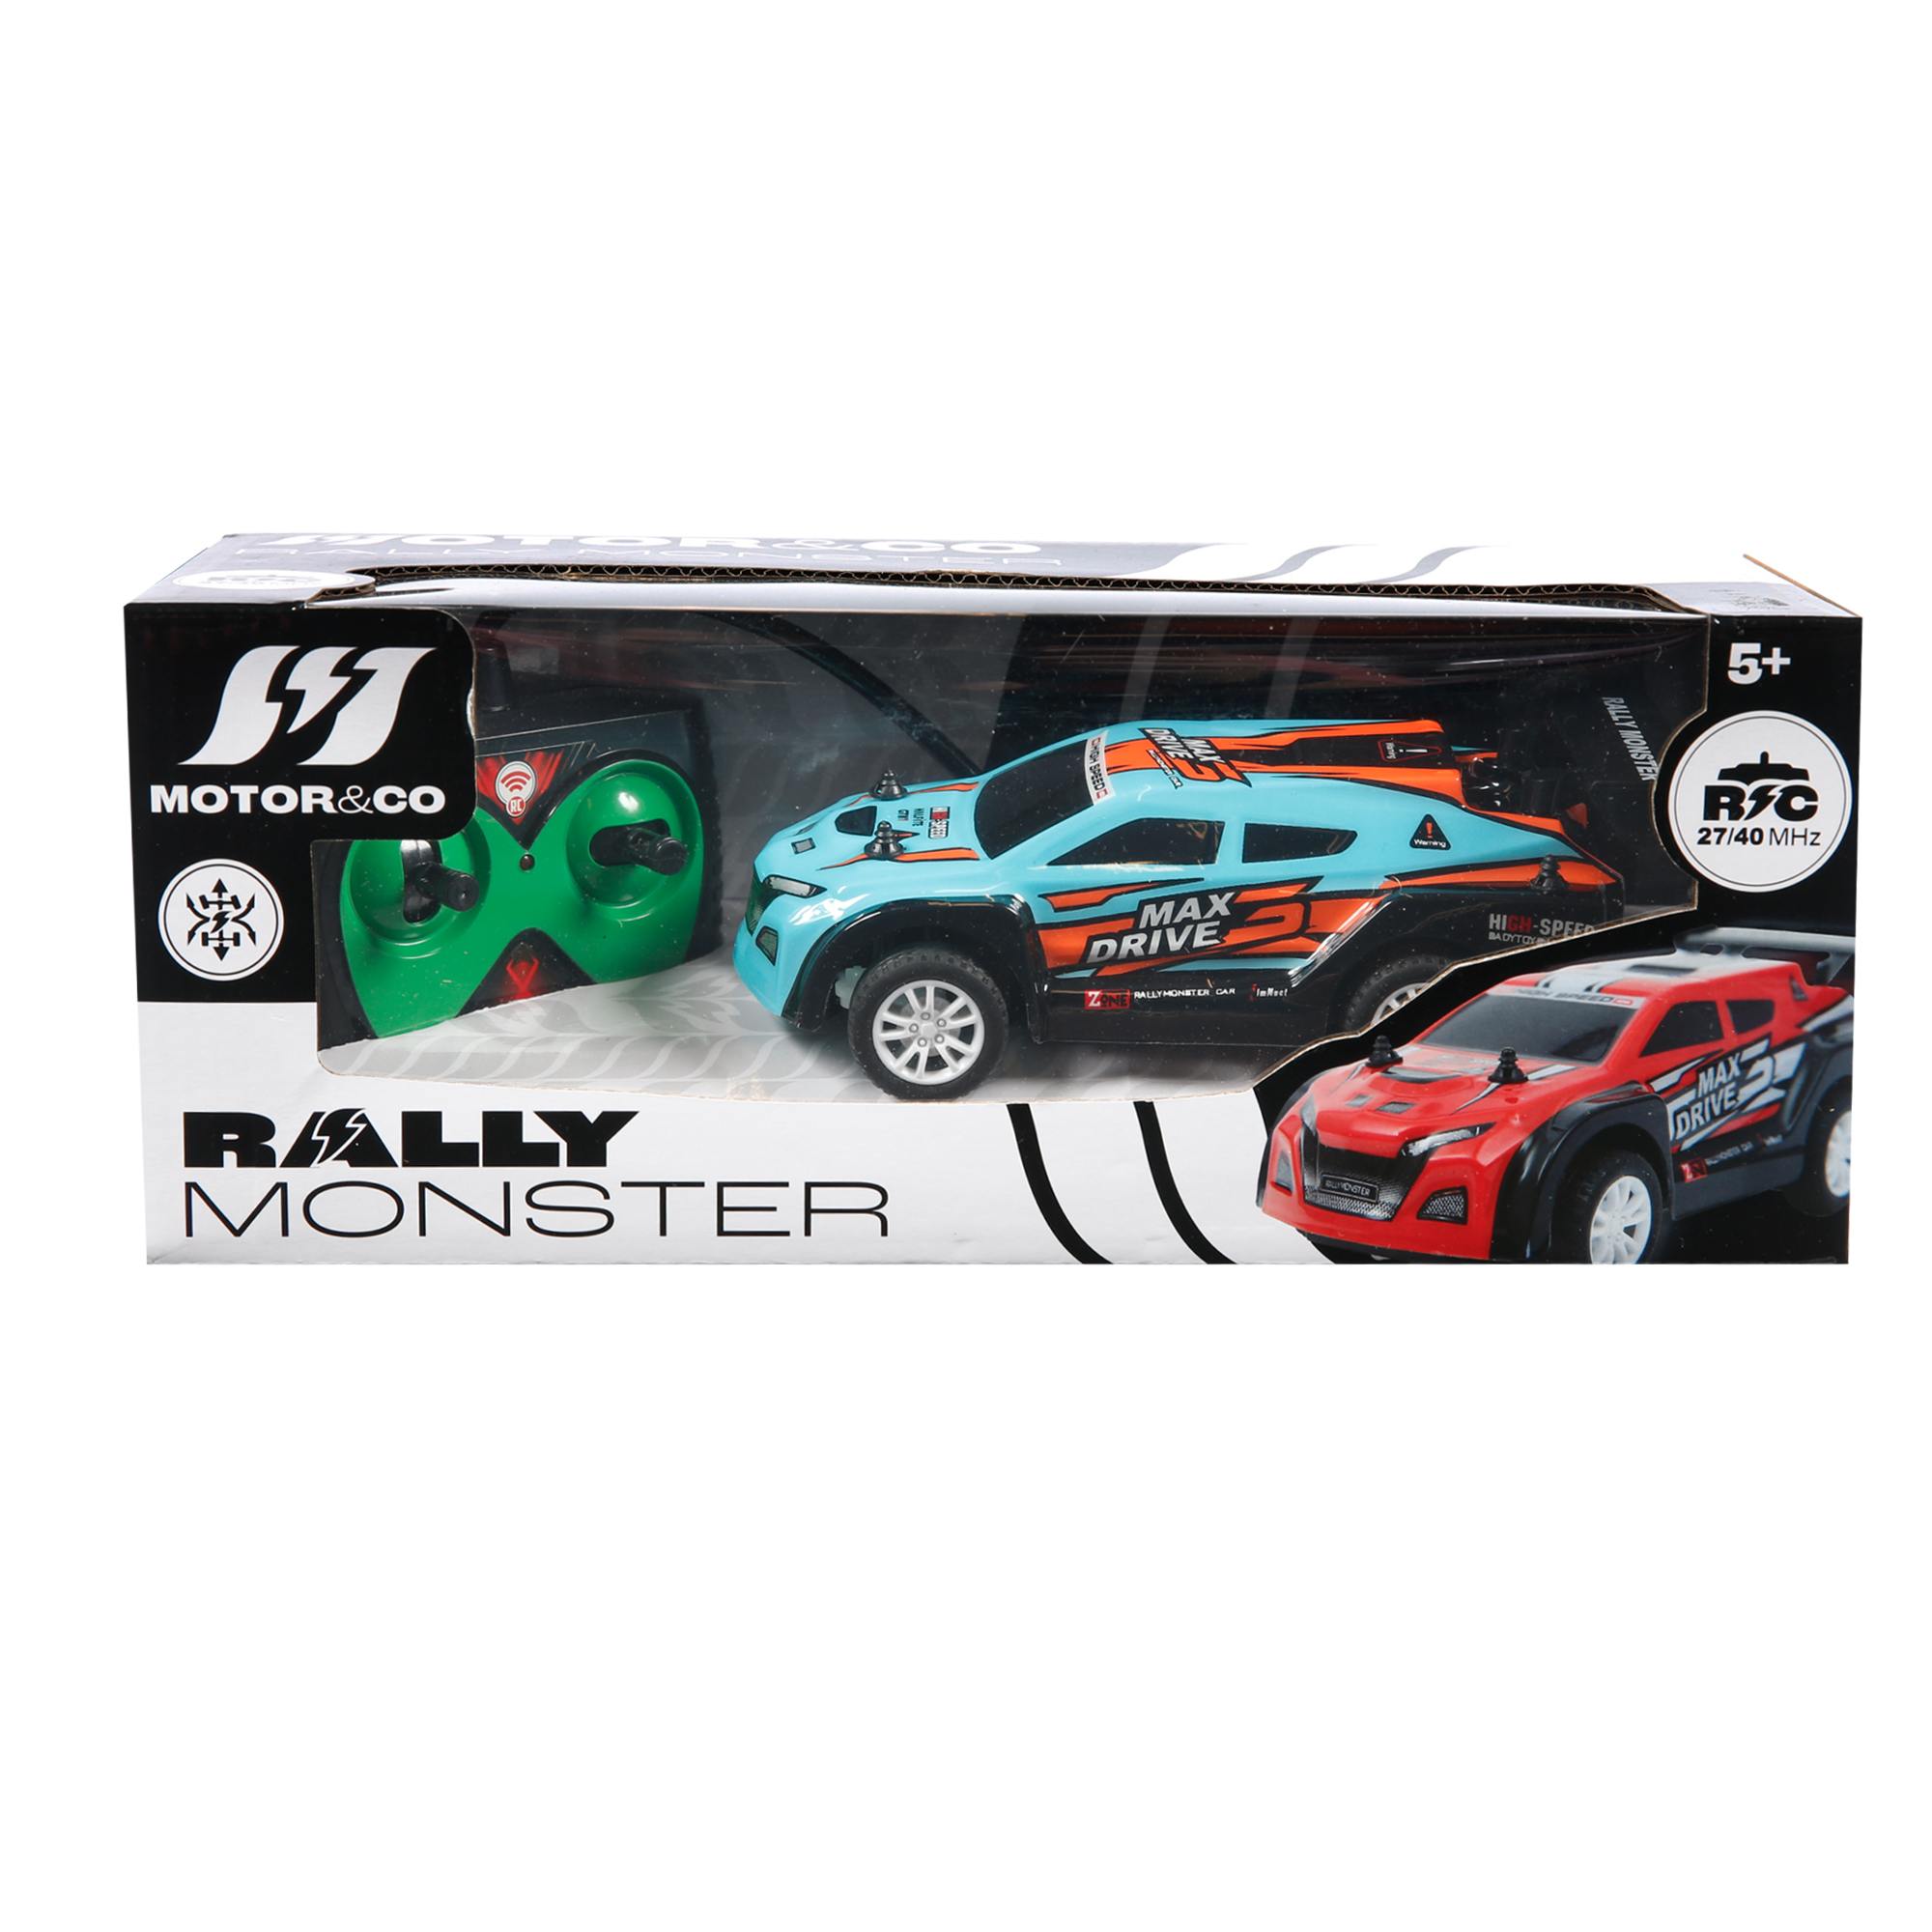 Rally monster - MOTOR & CO.